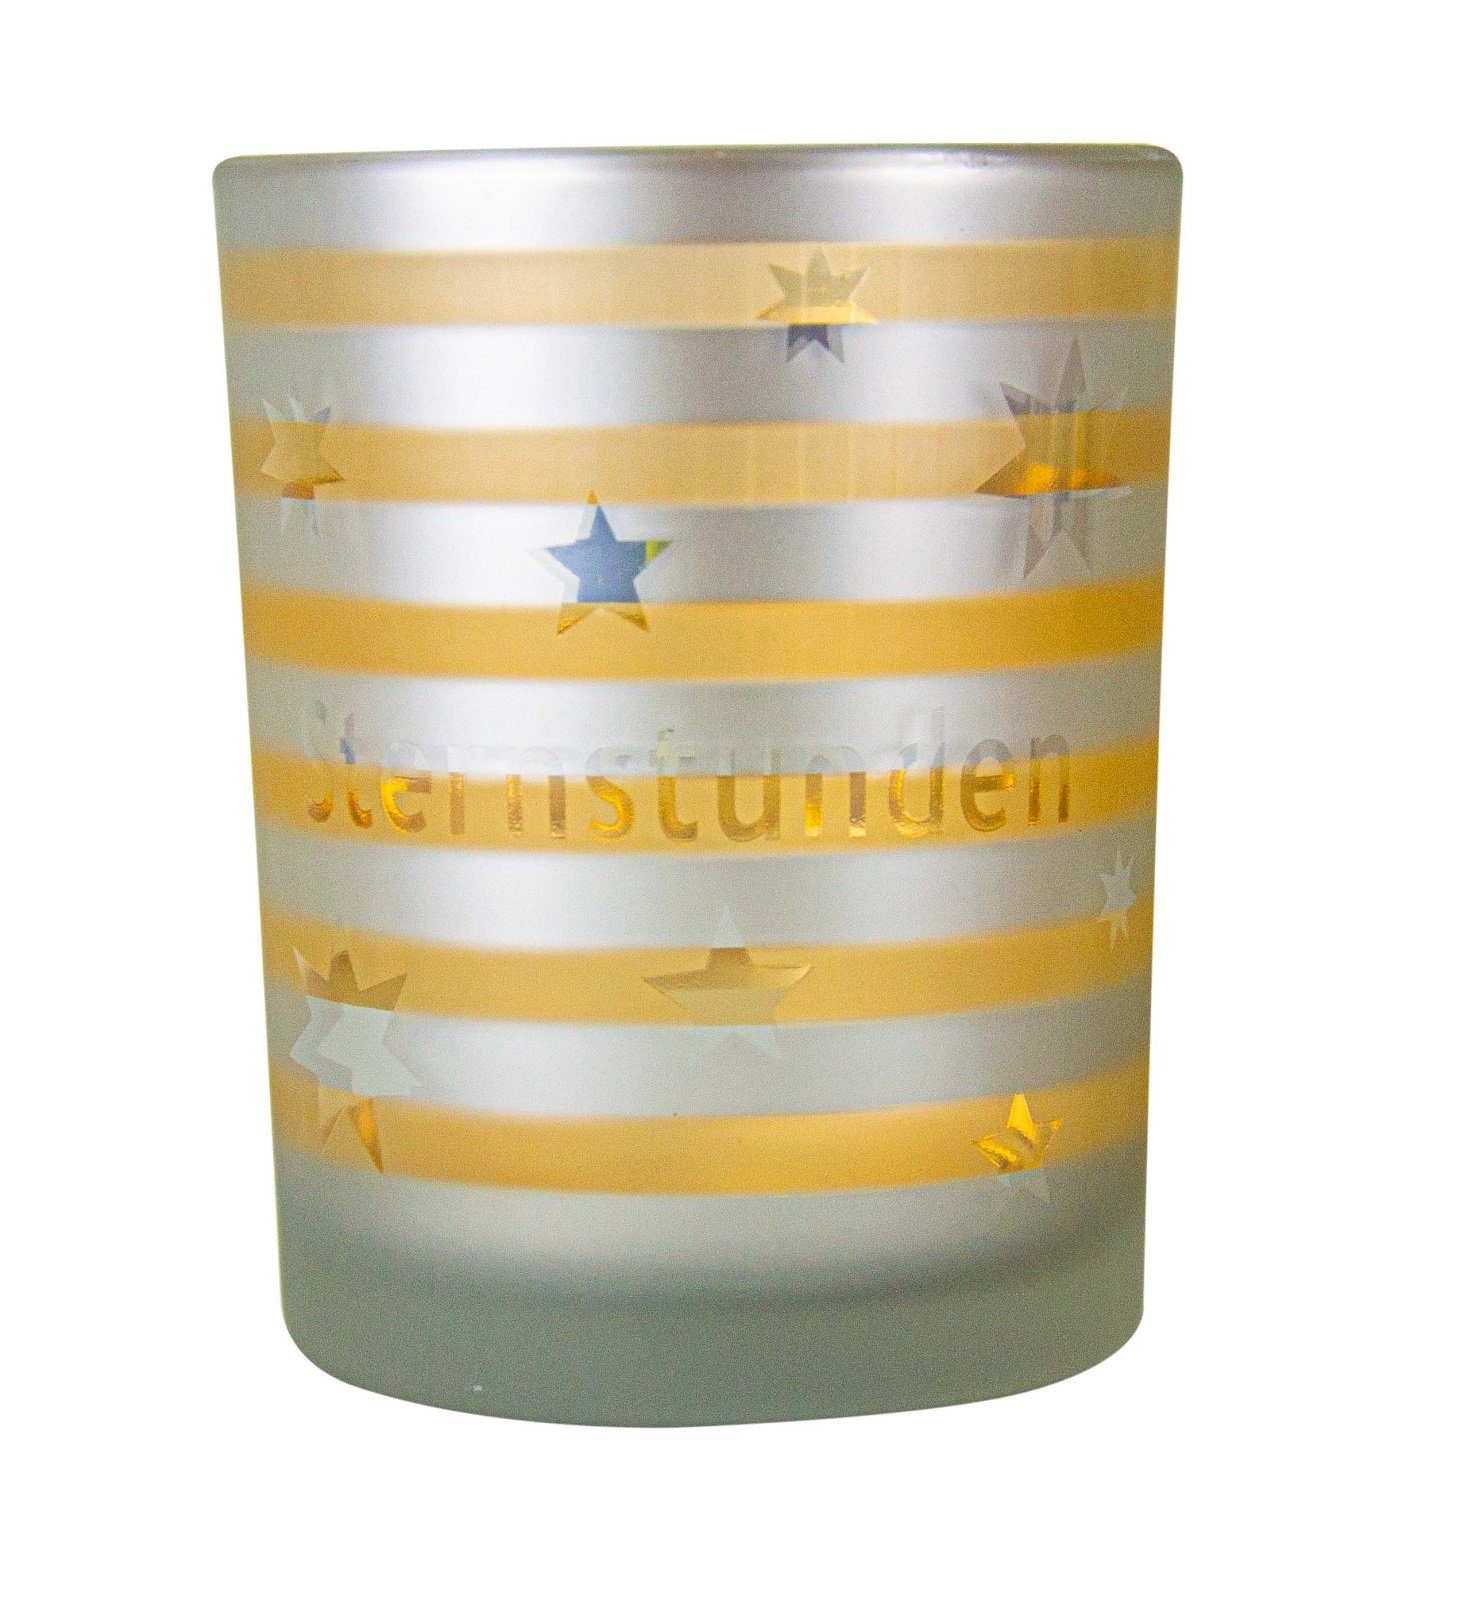 Parts4Living Windlicht Glas Teelichthalter mit Sternen Teelichtglas Kerzenhalter mit winterlichem Charme weiß gold 12x18 cm, im romantischen Stil